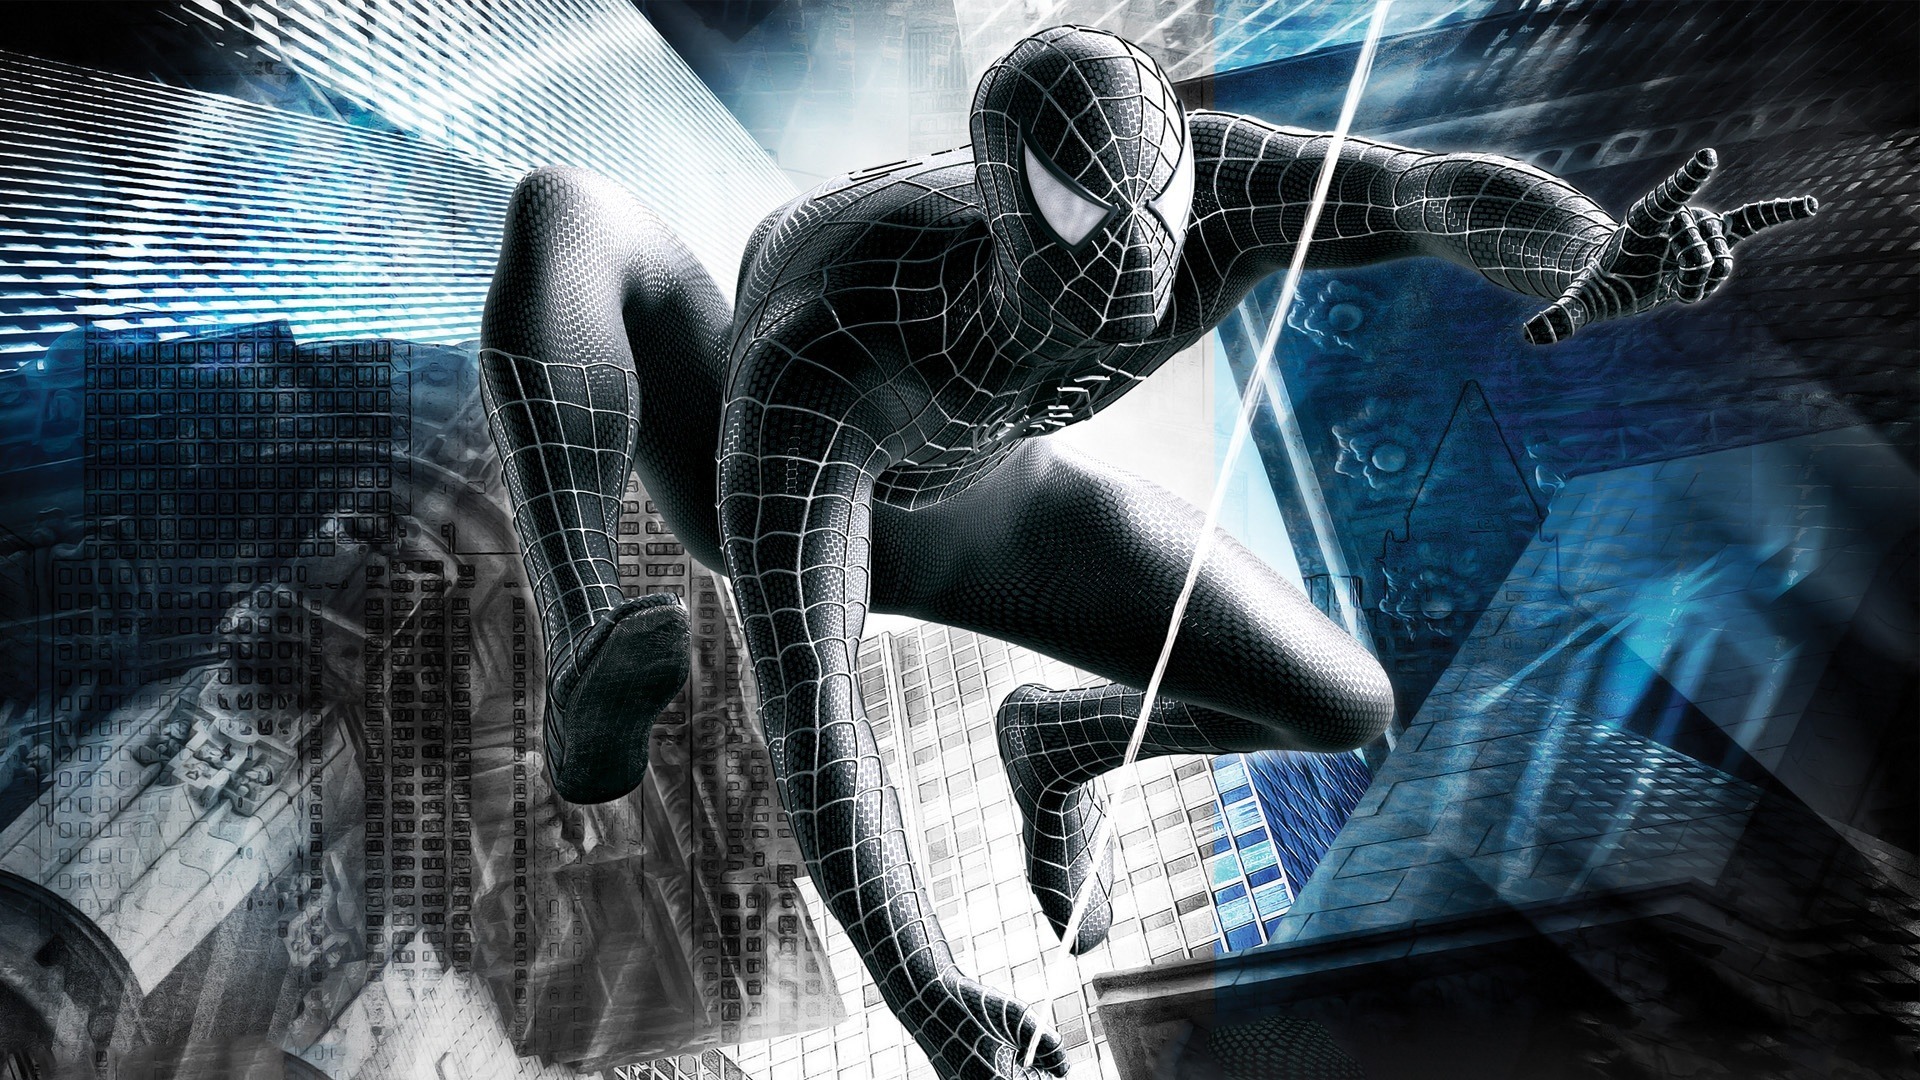 Papel de parede : Homem Aranha, Spider Man 3 Jogo 1920x1080 - U0Player -  2165565 - Papel de parede para pc - WallHere